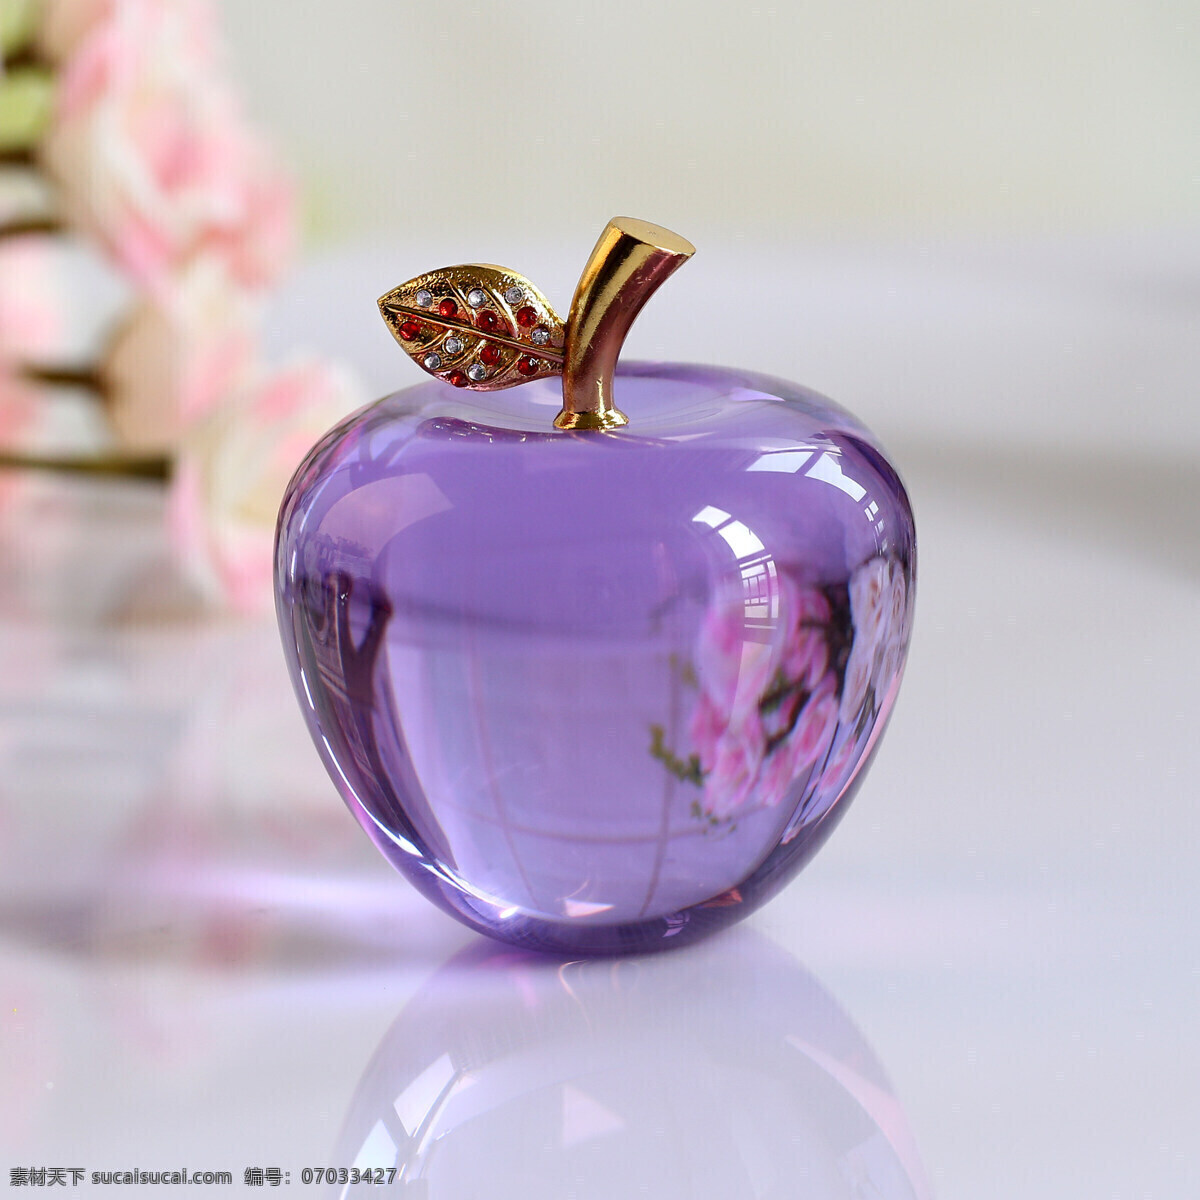 水晶苹果 平安夜 紫色苹果 镶钻苹果 礼物 生活百科 生活素材